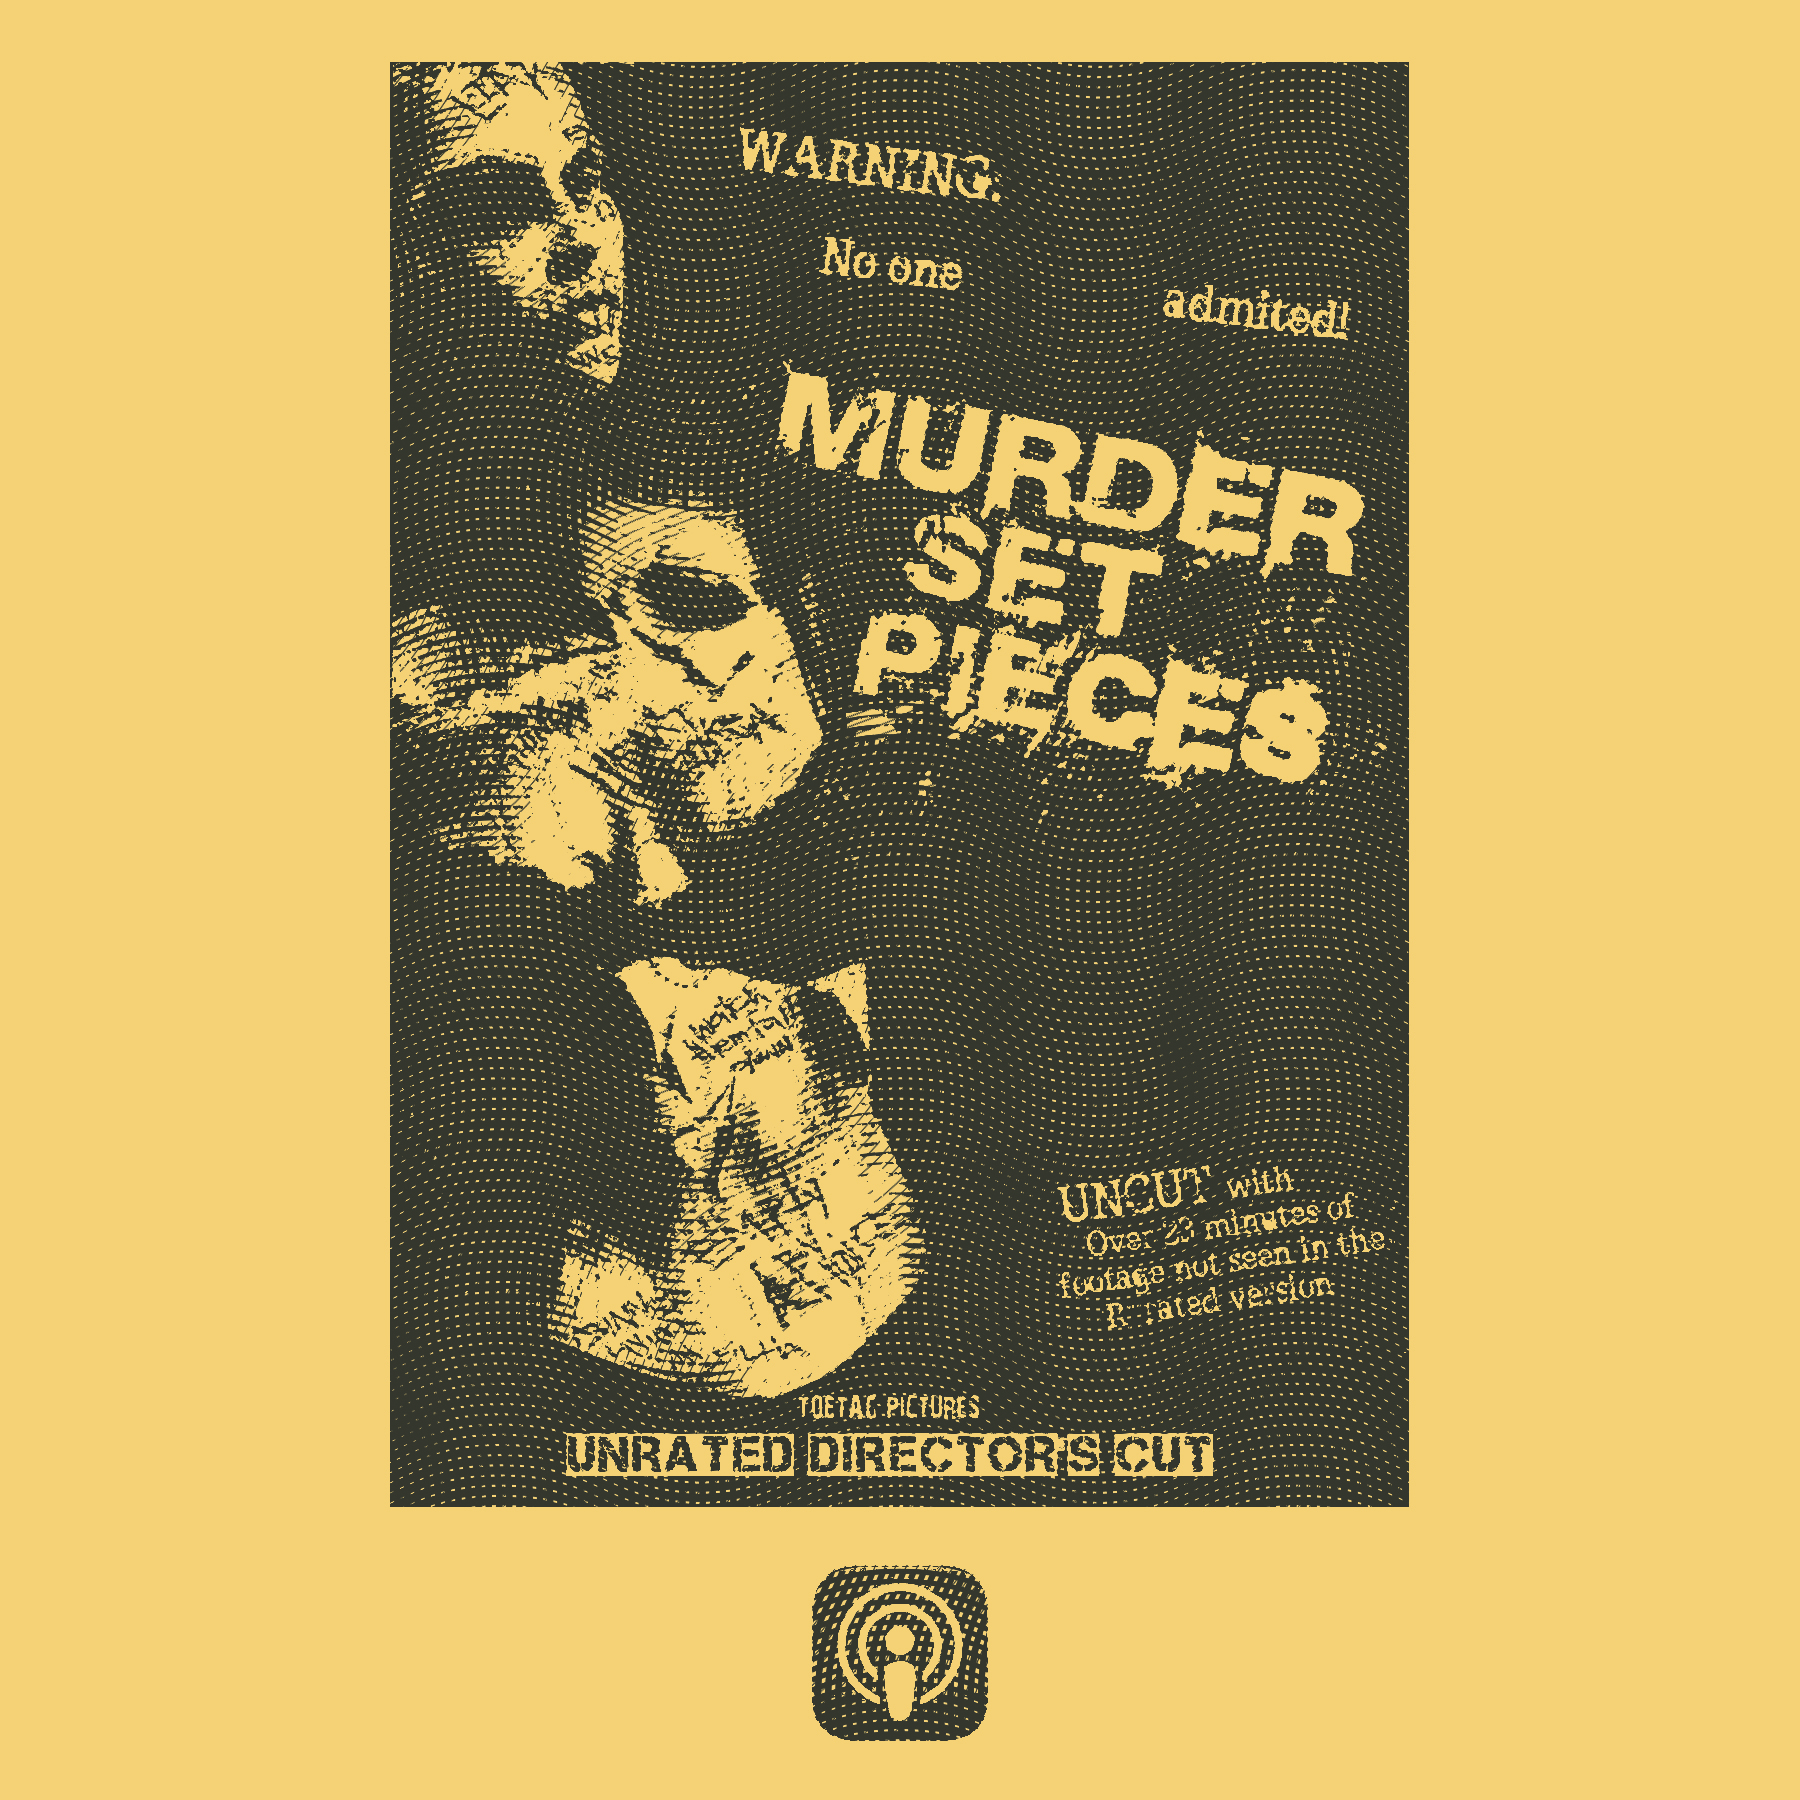 murder set pieces scene